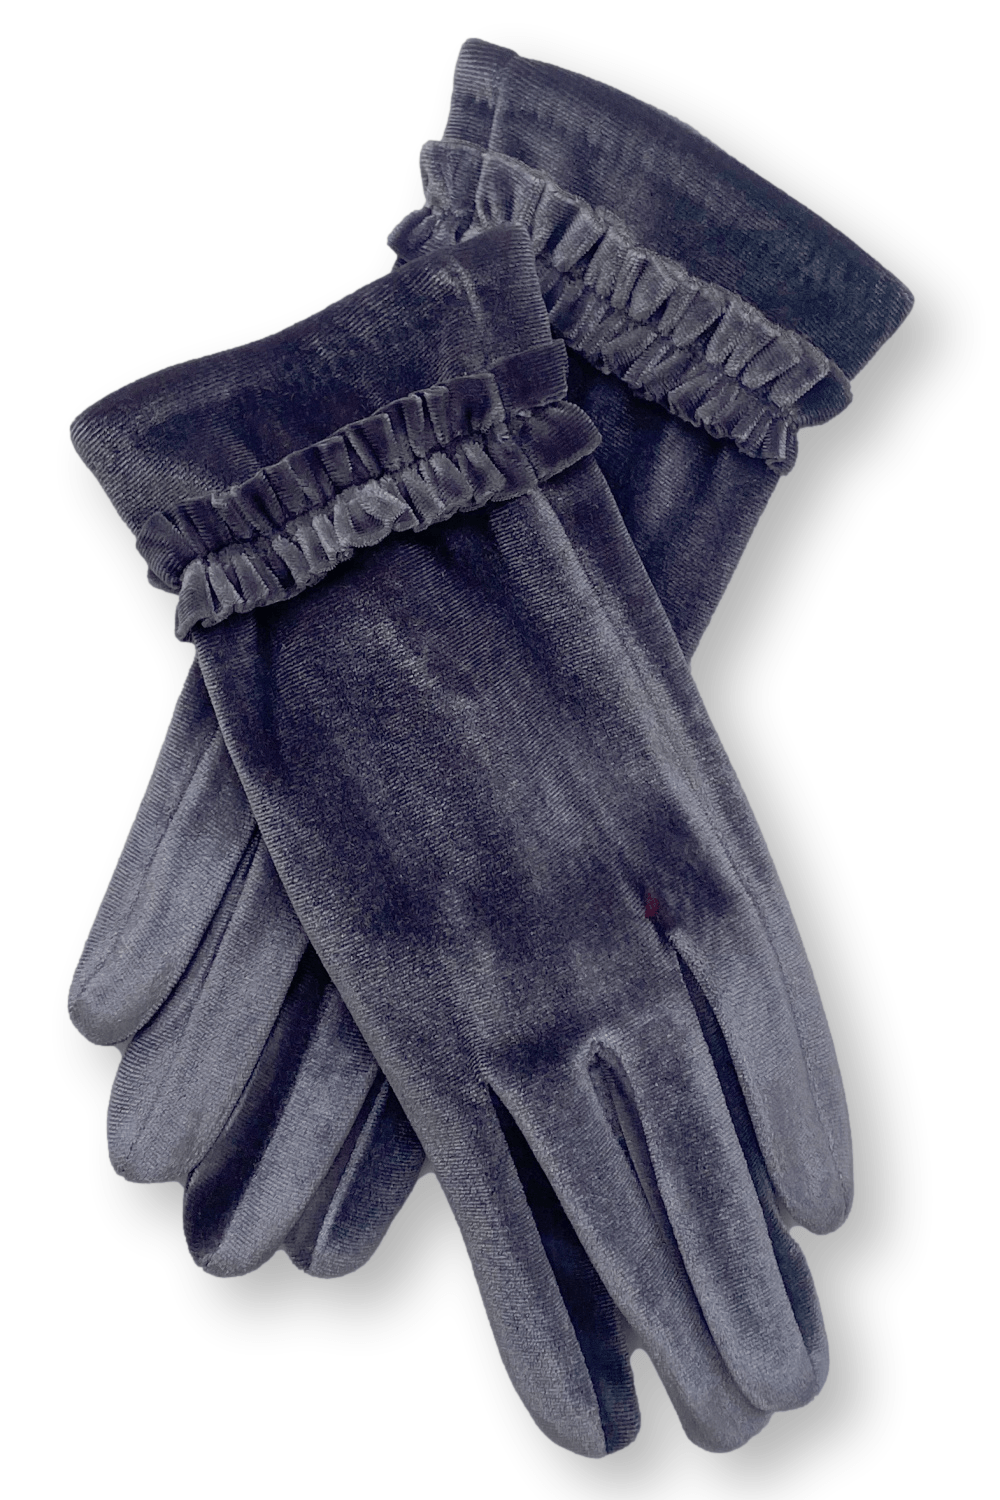 Grey Feminine velvet women's gloves with small wrist ruffle.